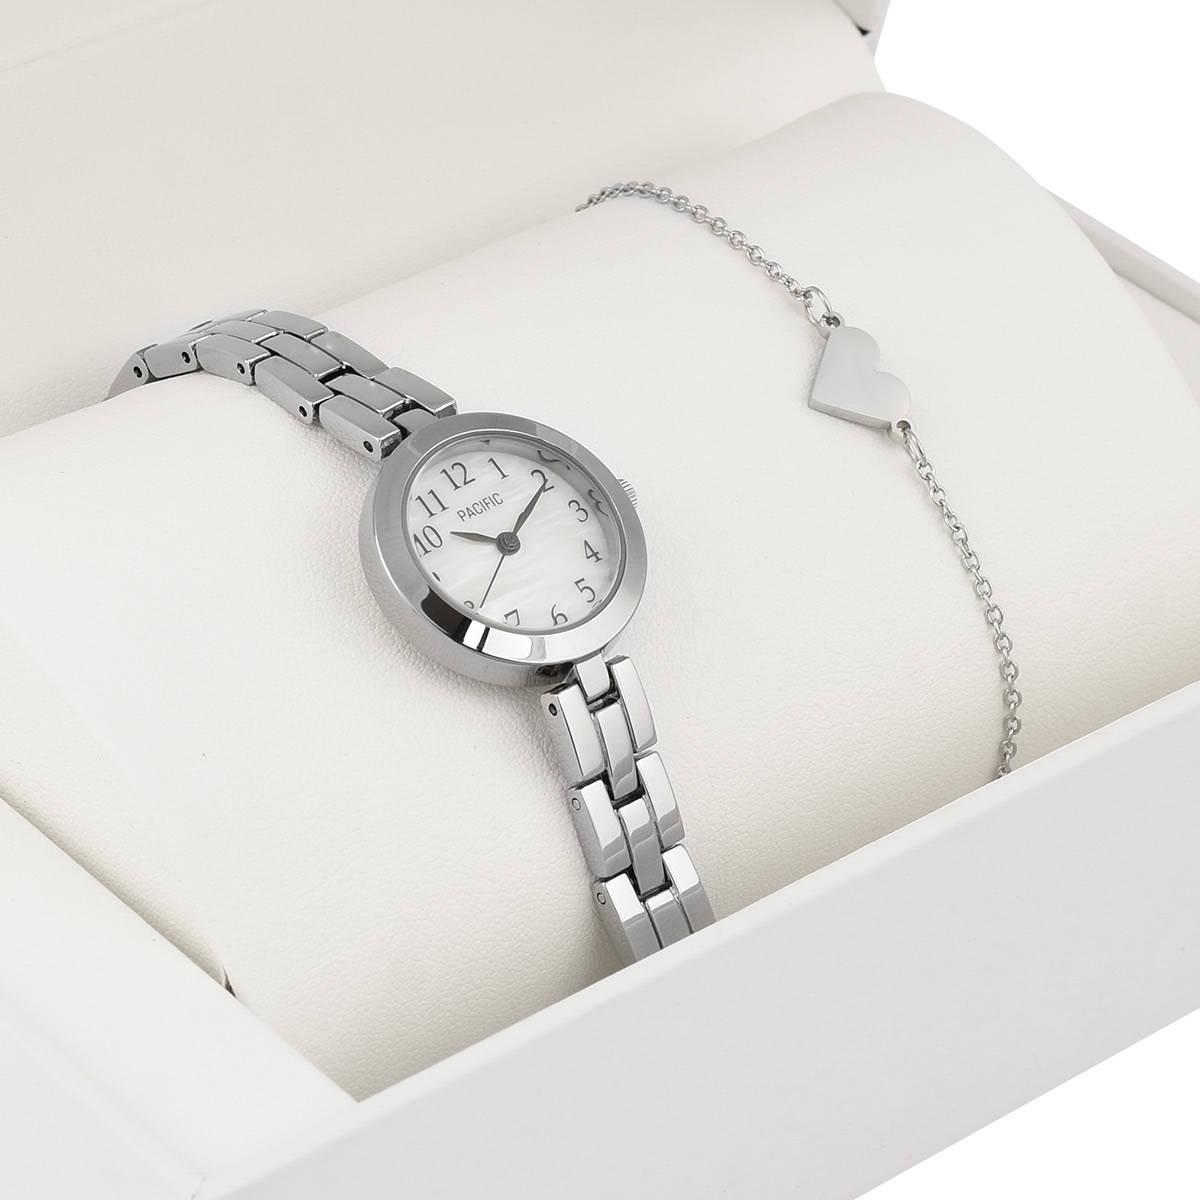 Zegarek dla dziecka zestaw prezentowy X6130-2 srebrny